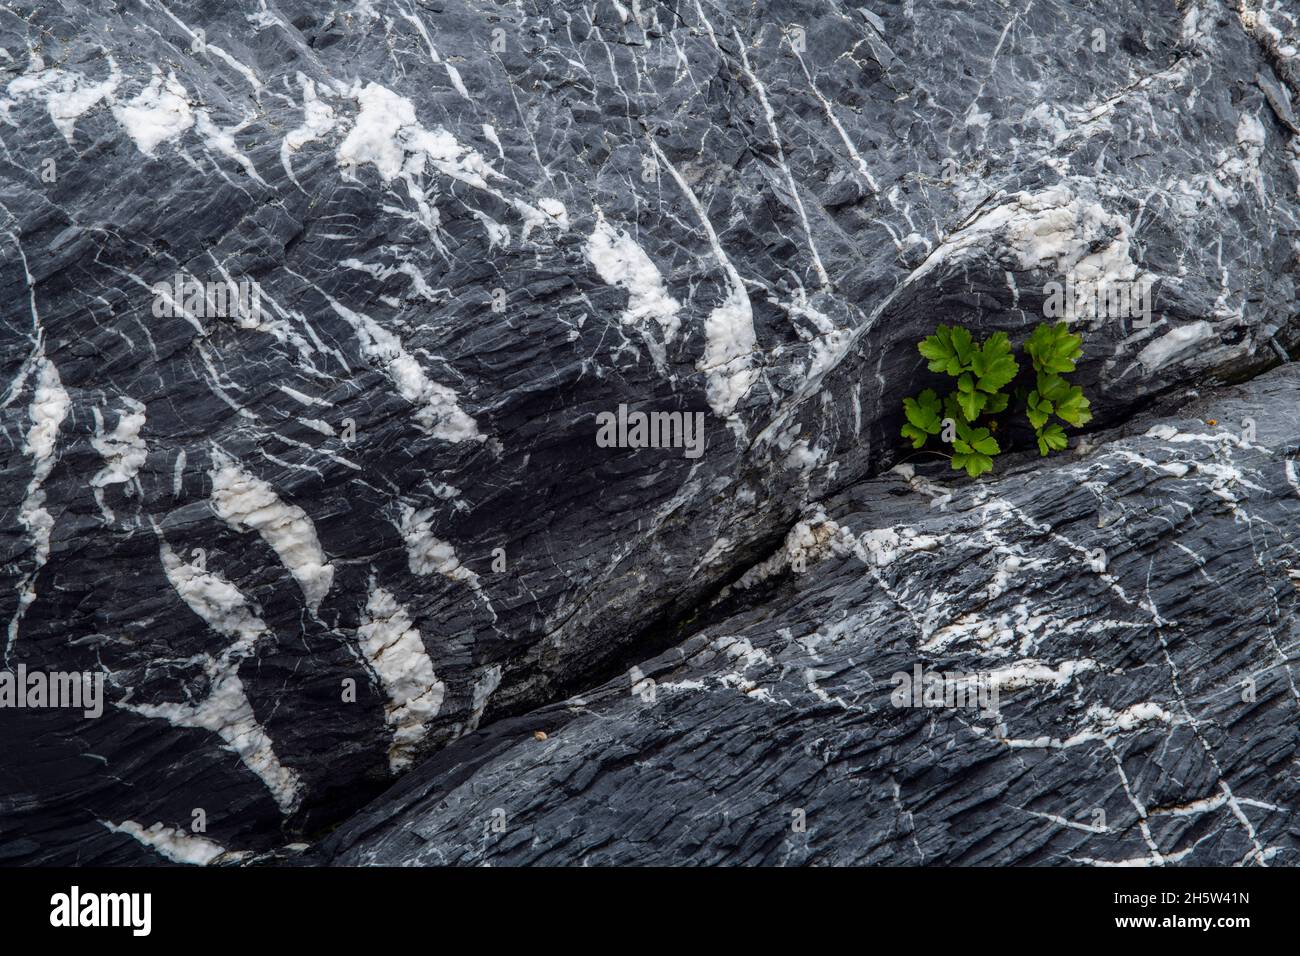 Patrons rocheux (quartz et granite) avec Beach lovage (Ligusticum scoticum) croissant à partir d'une fissure, St. Lunaire-Griquet (Terre-Neuve-et-Labrador), T.-N.-L., ca Banque D'Images